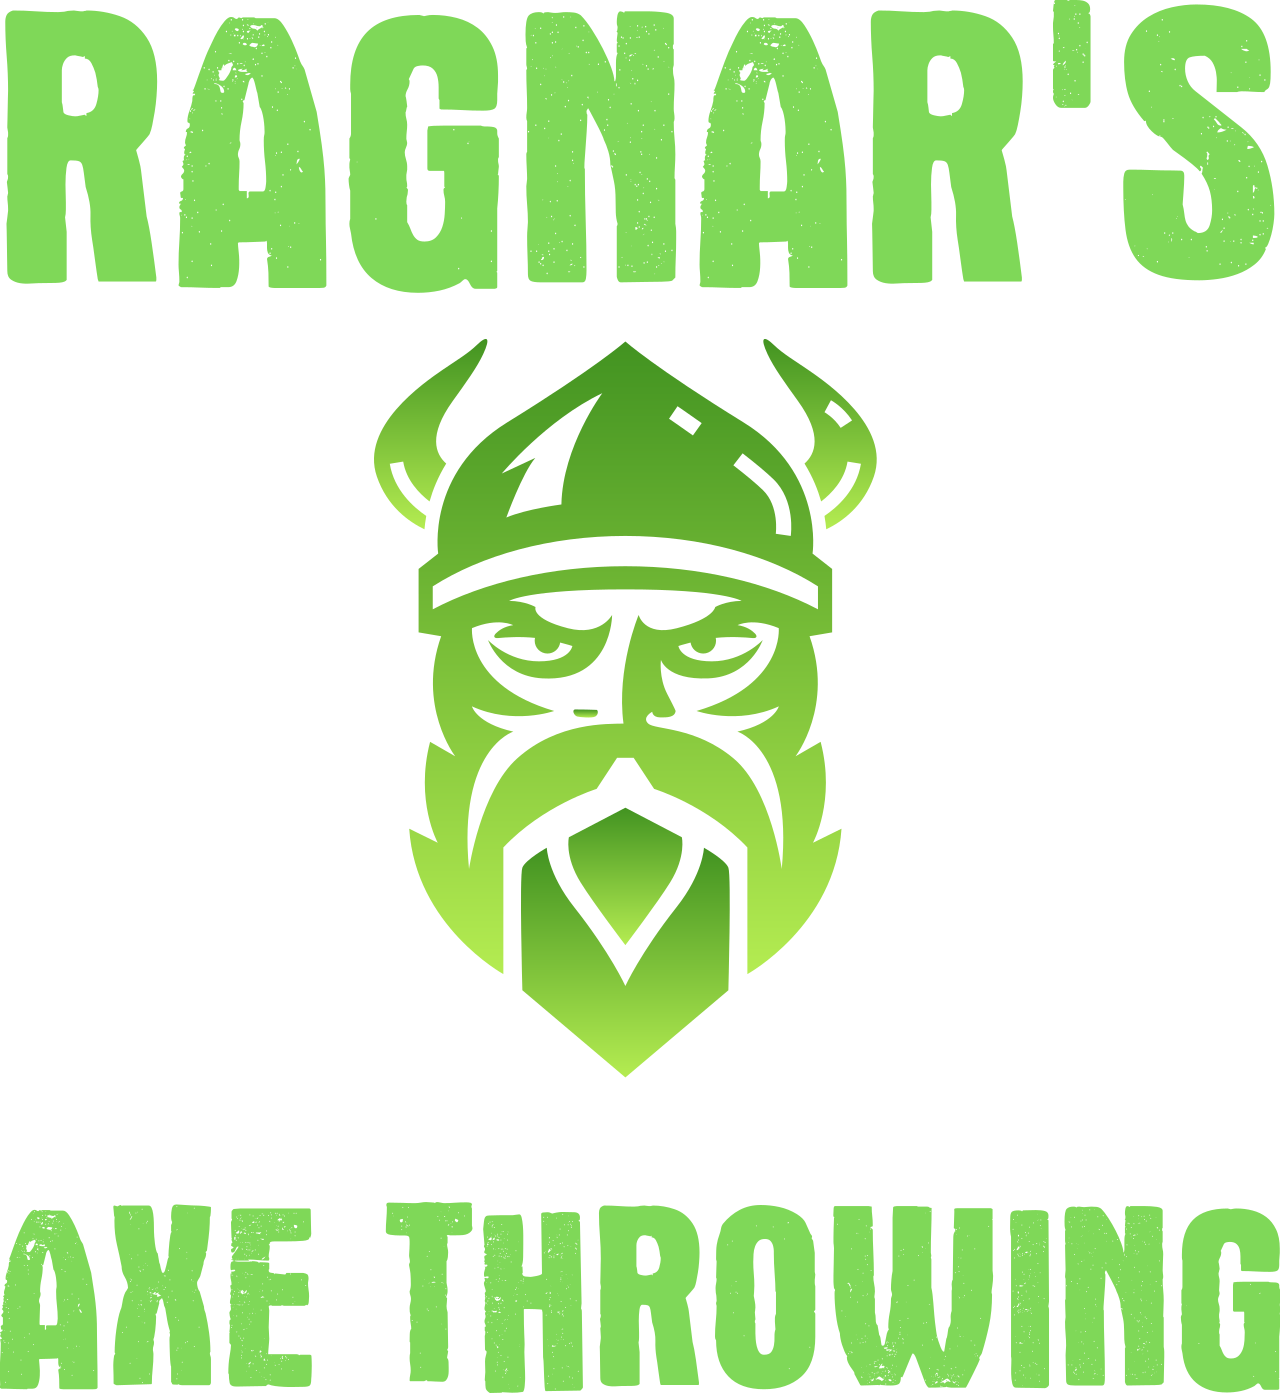 Ragnar's's logo